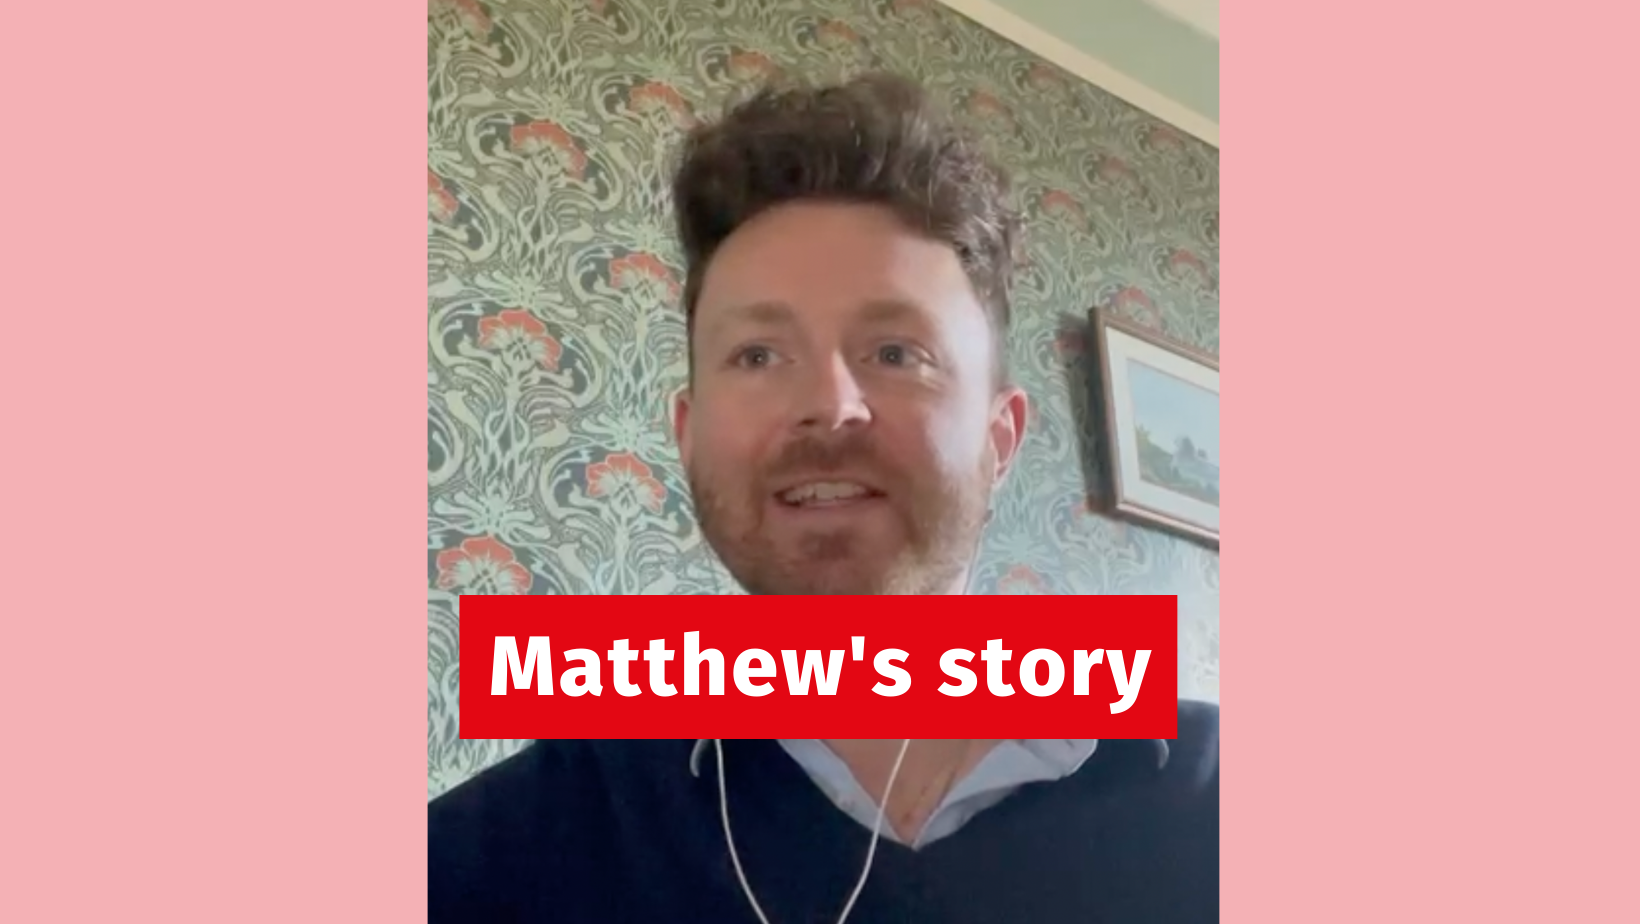 Matthew's story